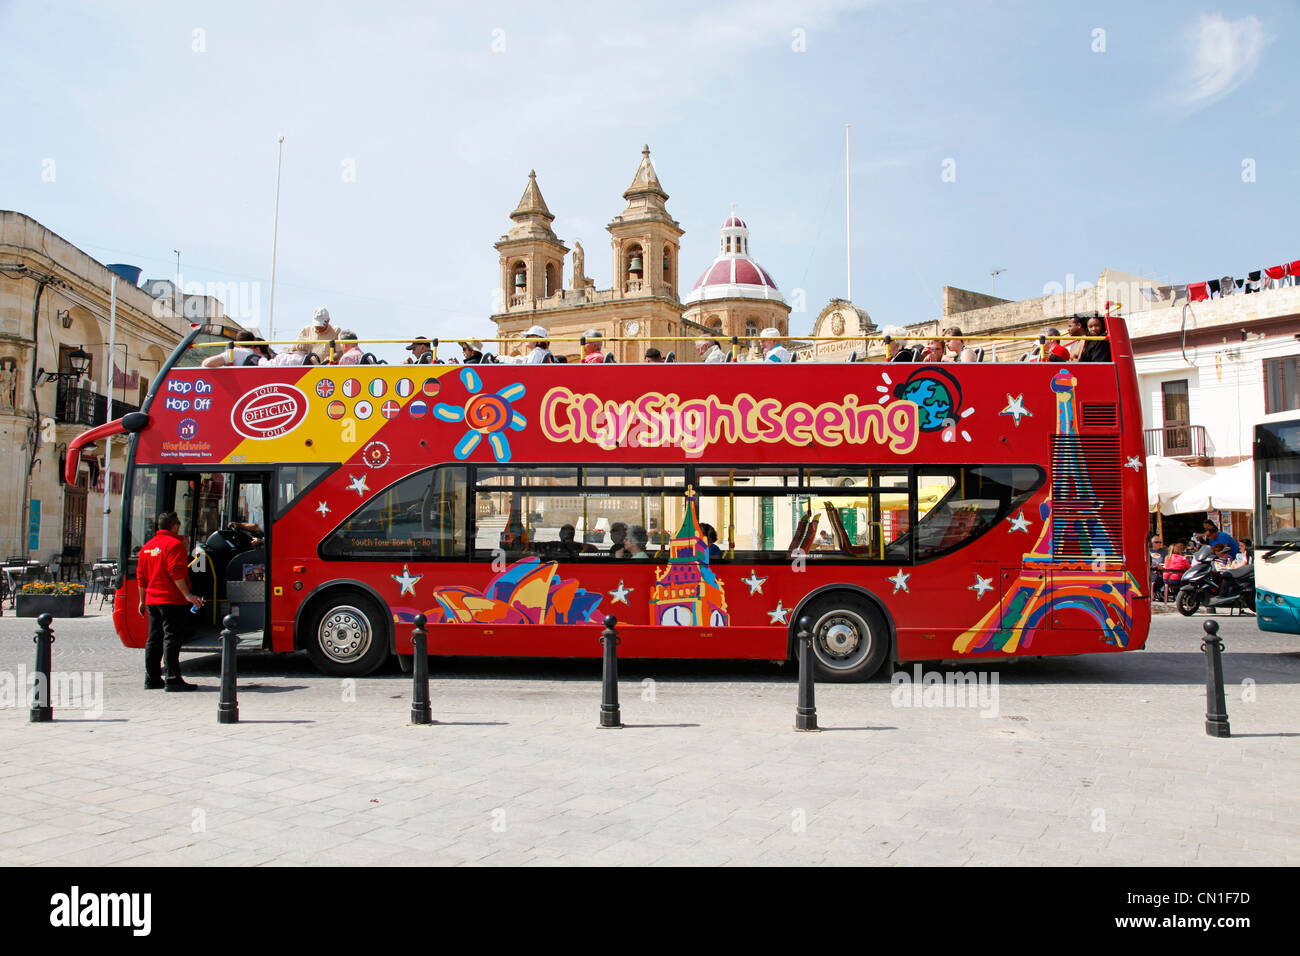 Red double decker open top città turistica di autobus turistici di Marsaxlokk, Malta Foto Stock